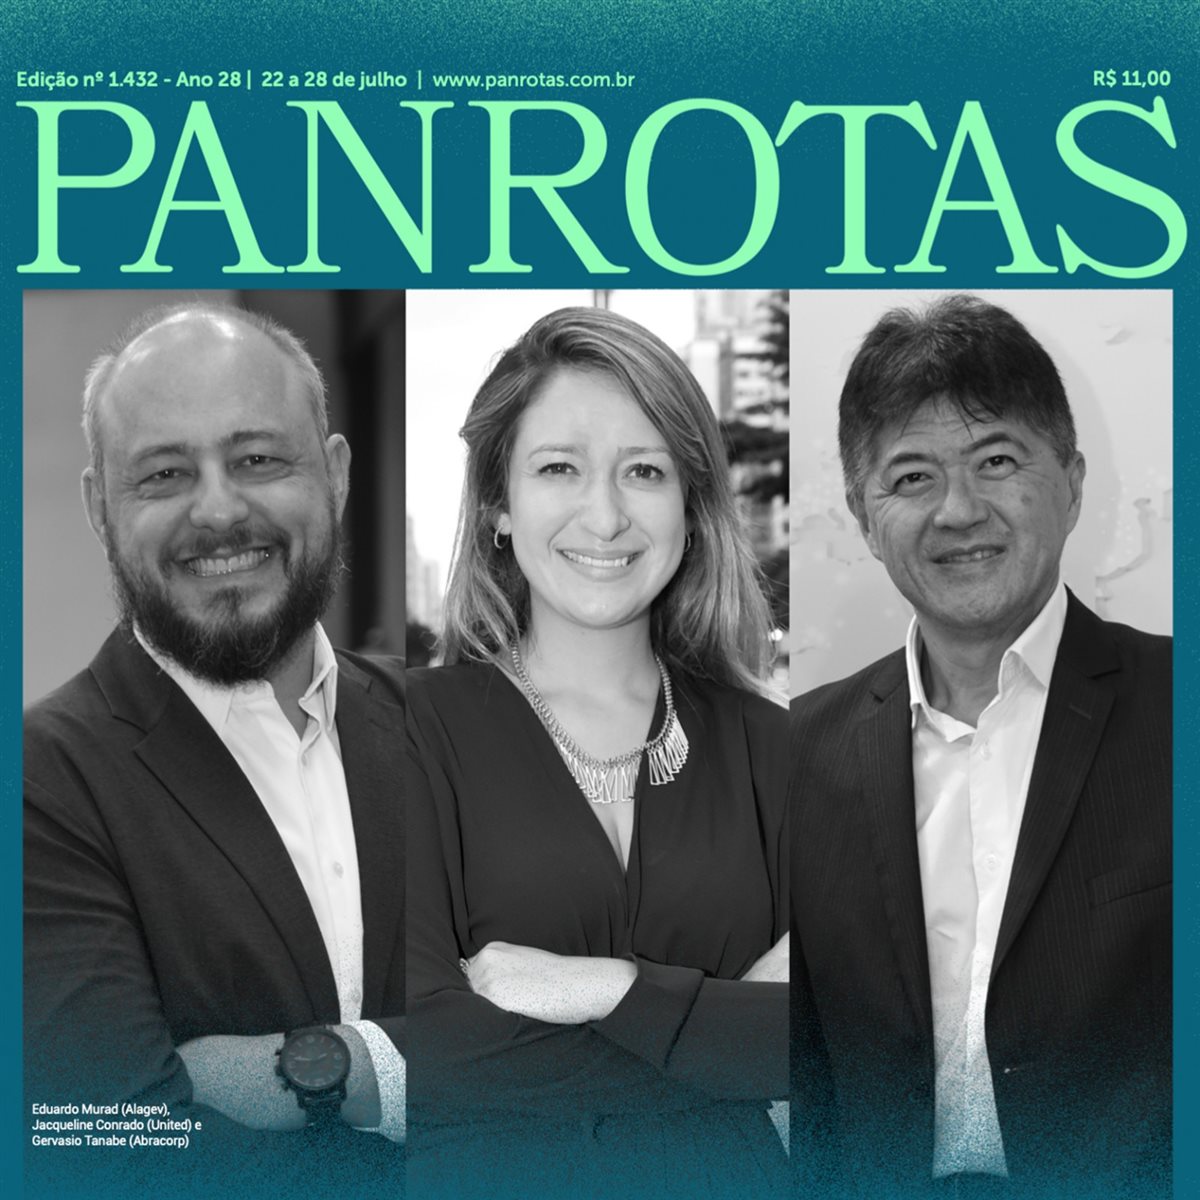 Capa da Revista PANROTAS 1.432 traz matéria completa sobre mudanças urgentes de que o setor de viagens corporativas no Brasil precisa